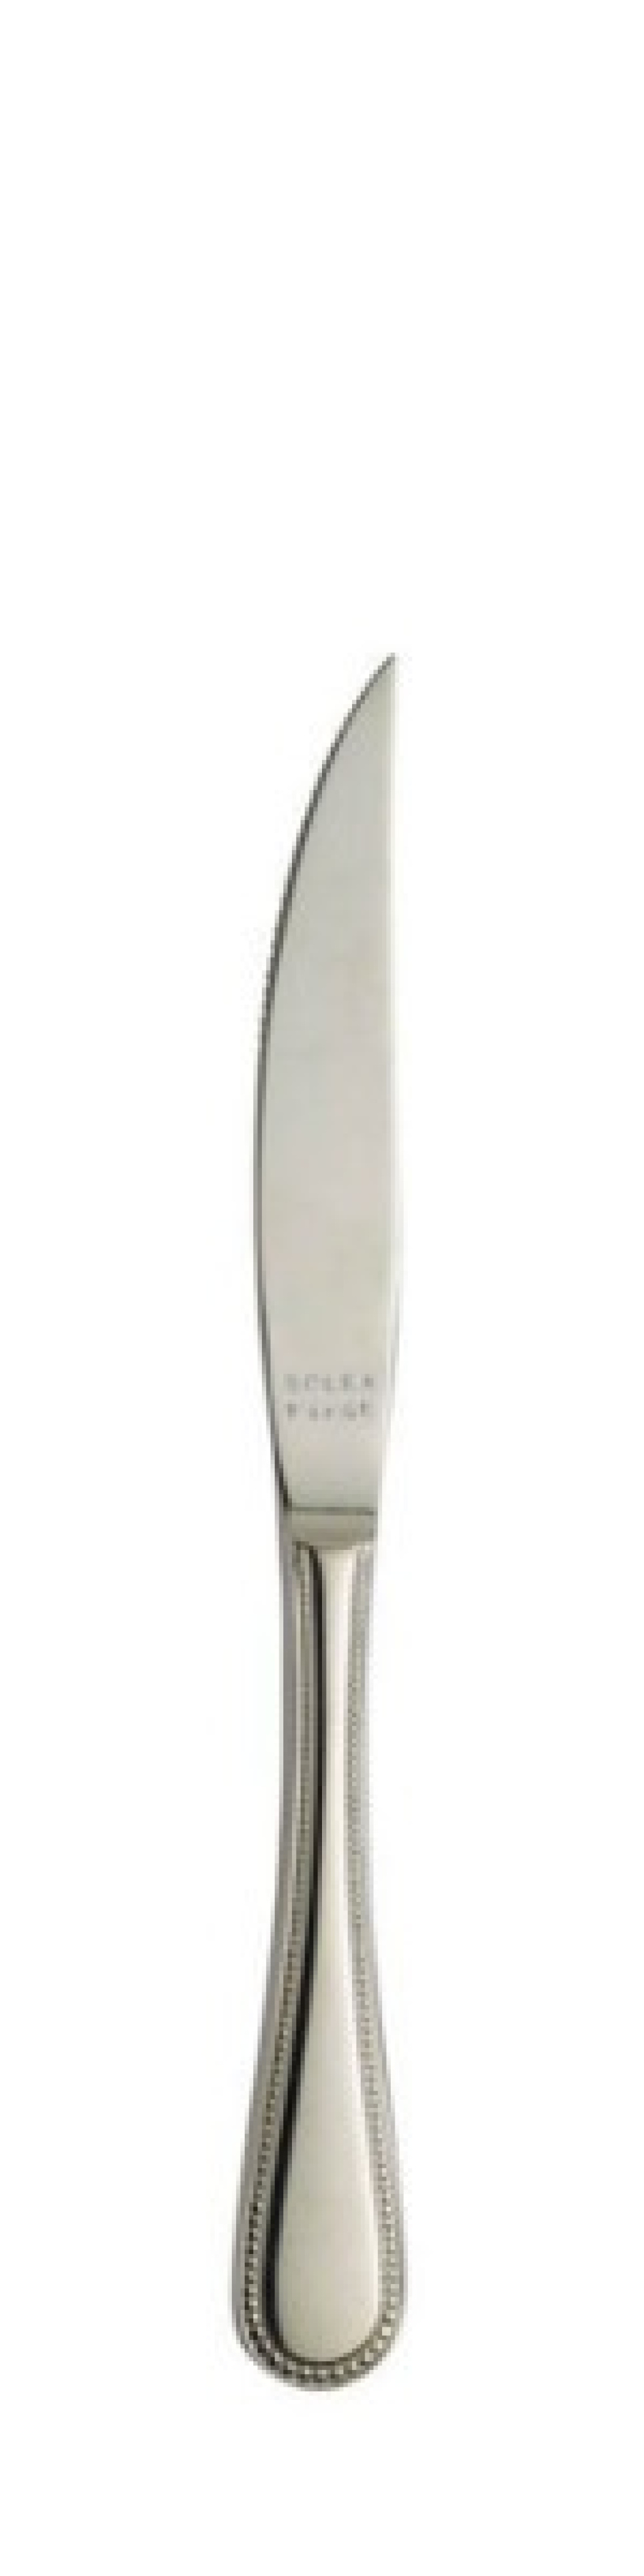 Perle Fleischmesser mit Hohlgriff 189 mm - Solex in der Gruppe Tischgedeck / Besteck / Messer bei The Kitchen Lab (1284-21425)